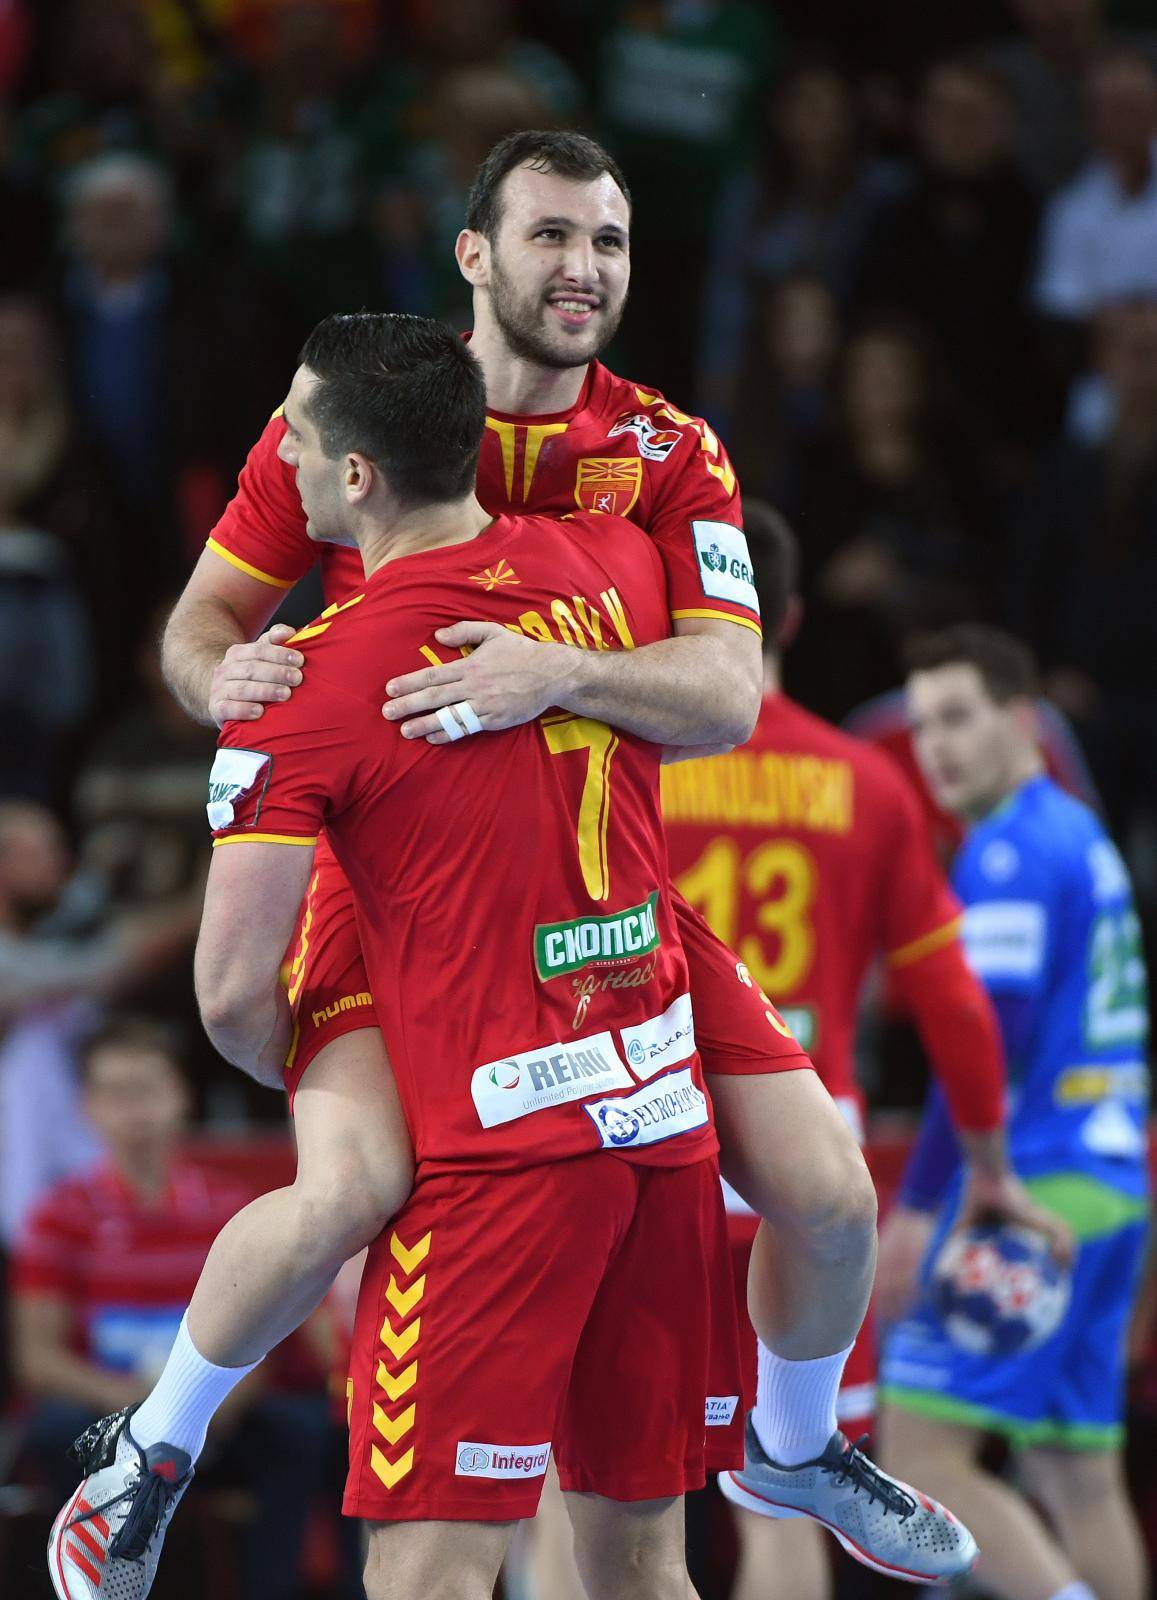 Handball: Macedonia vs Slovenia